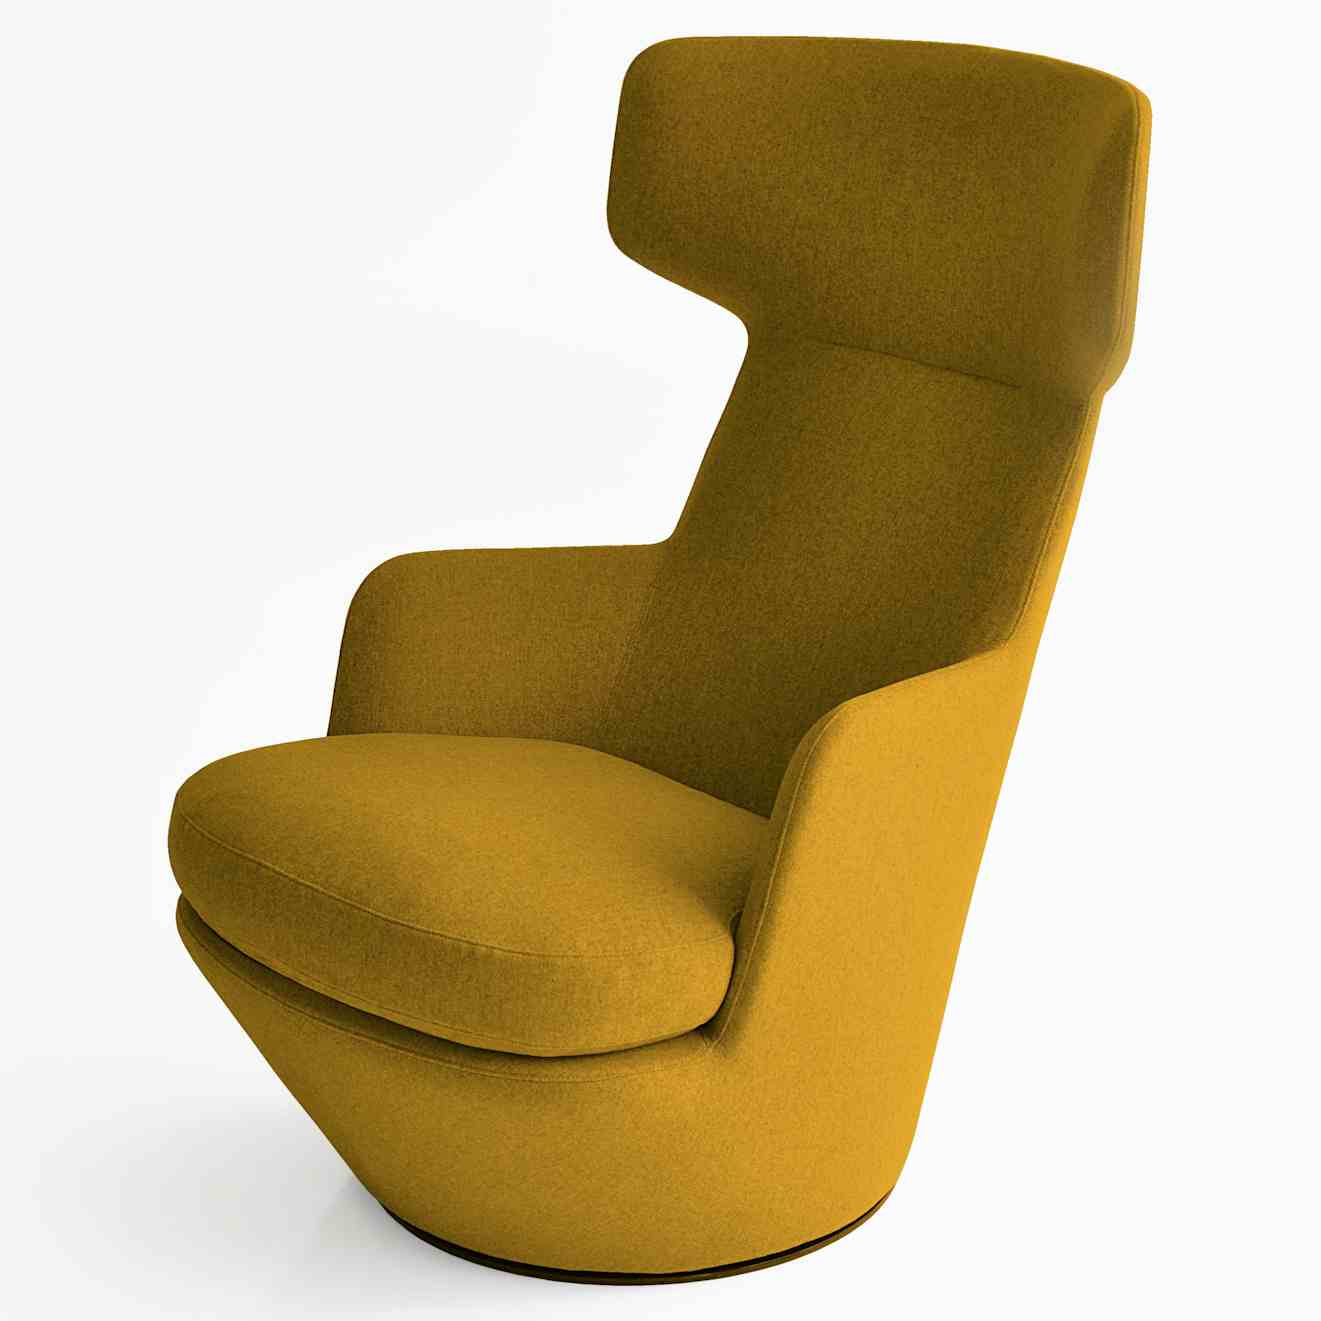 Bensen furniture my turn chair yellow haute living